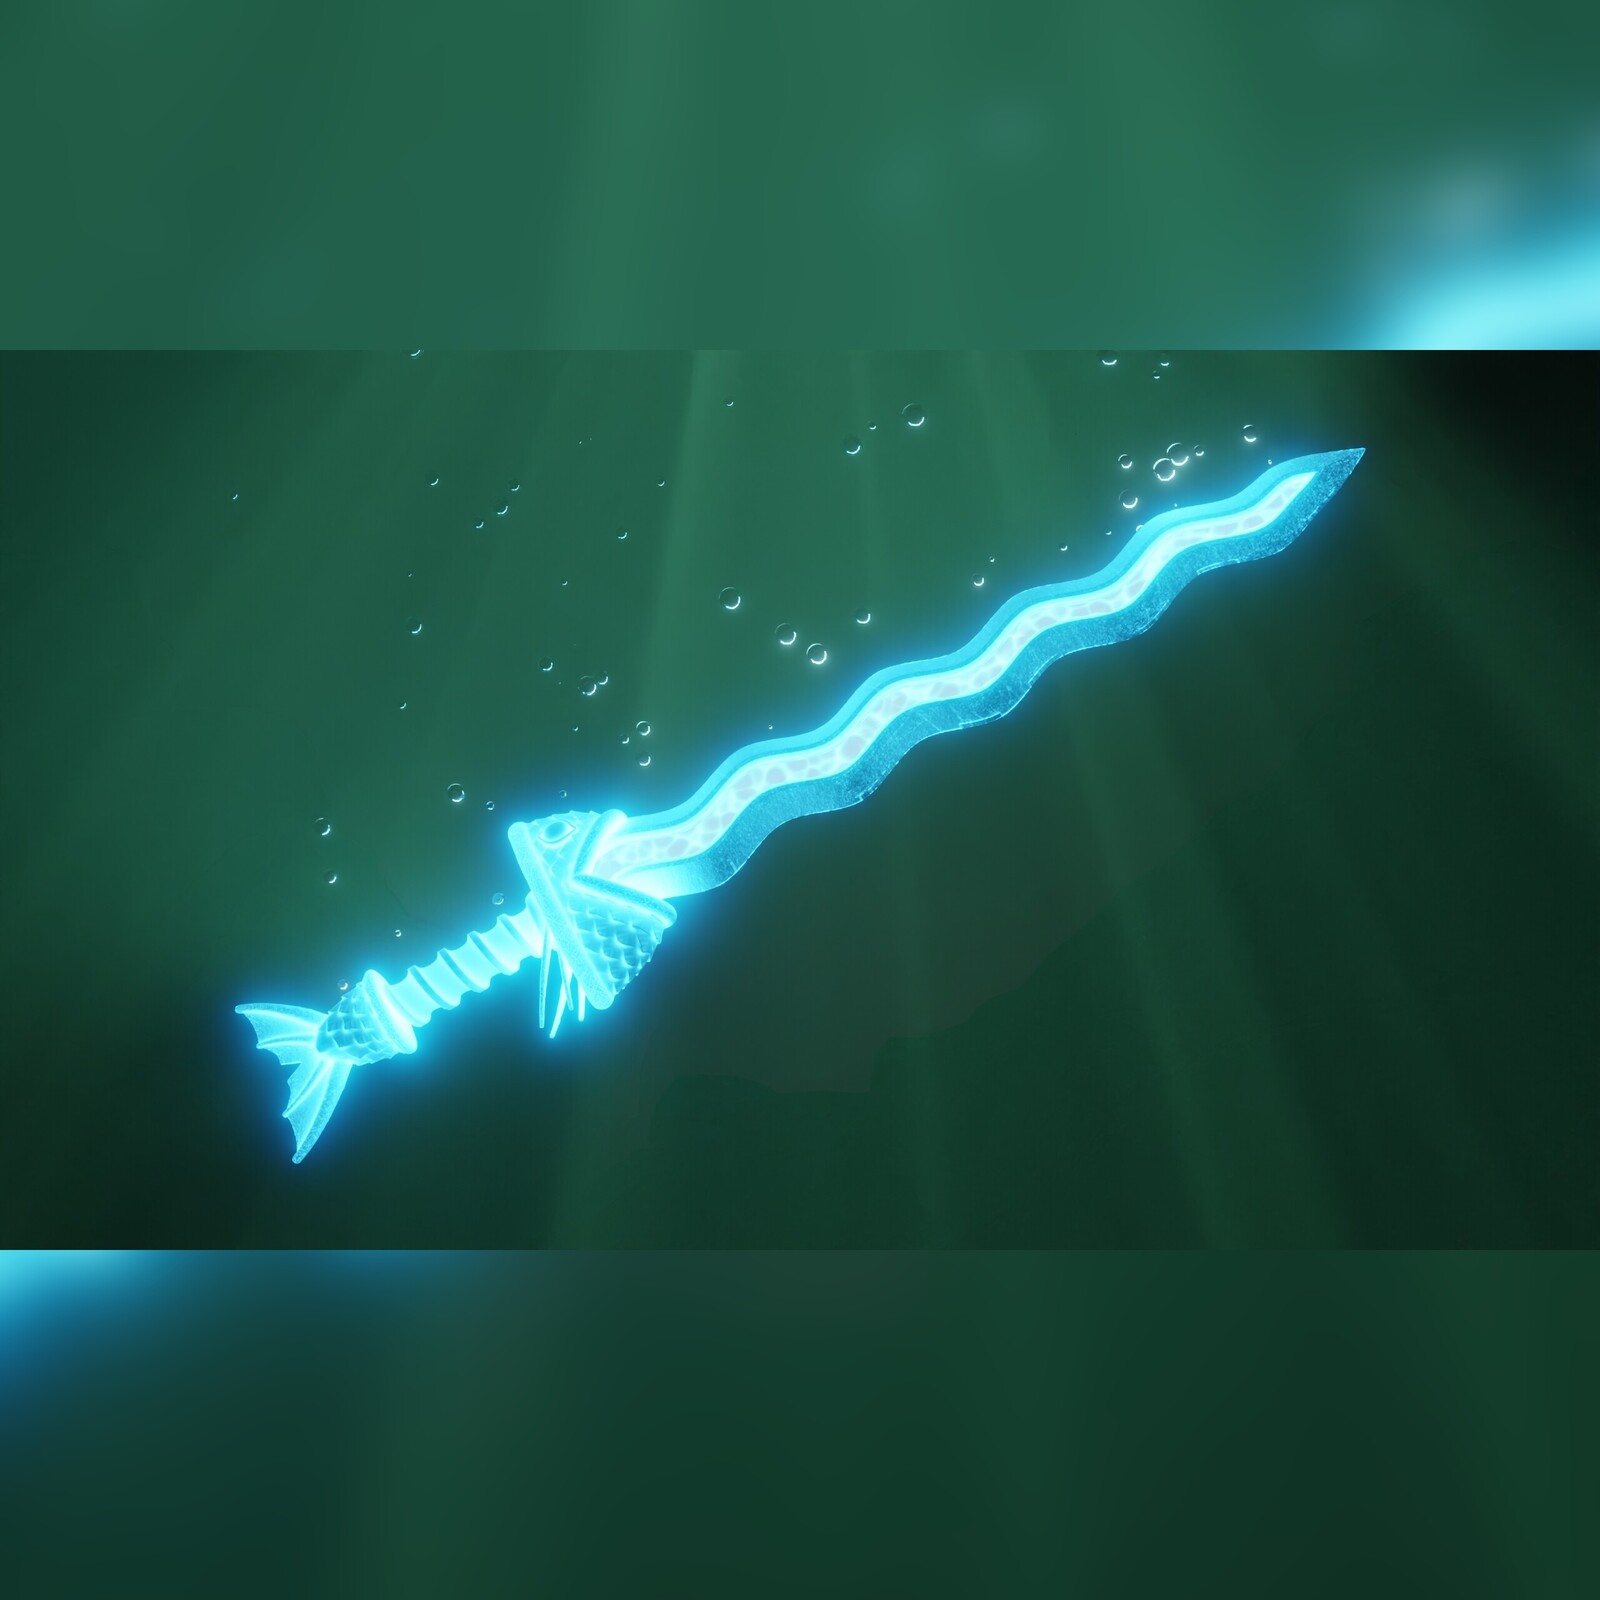 Water Spirit's Sword